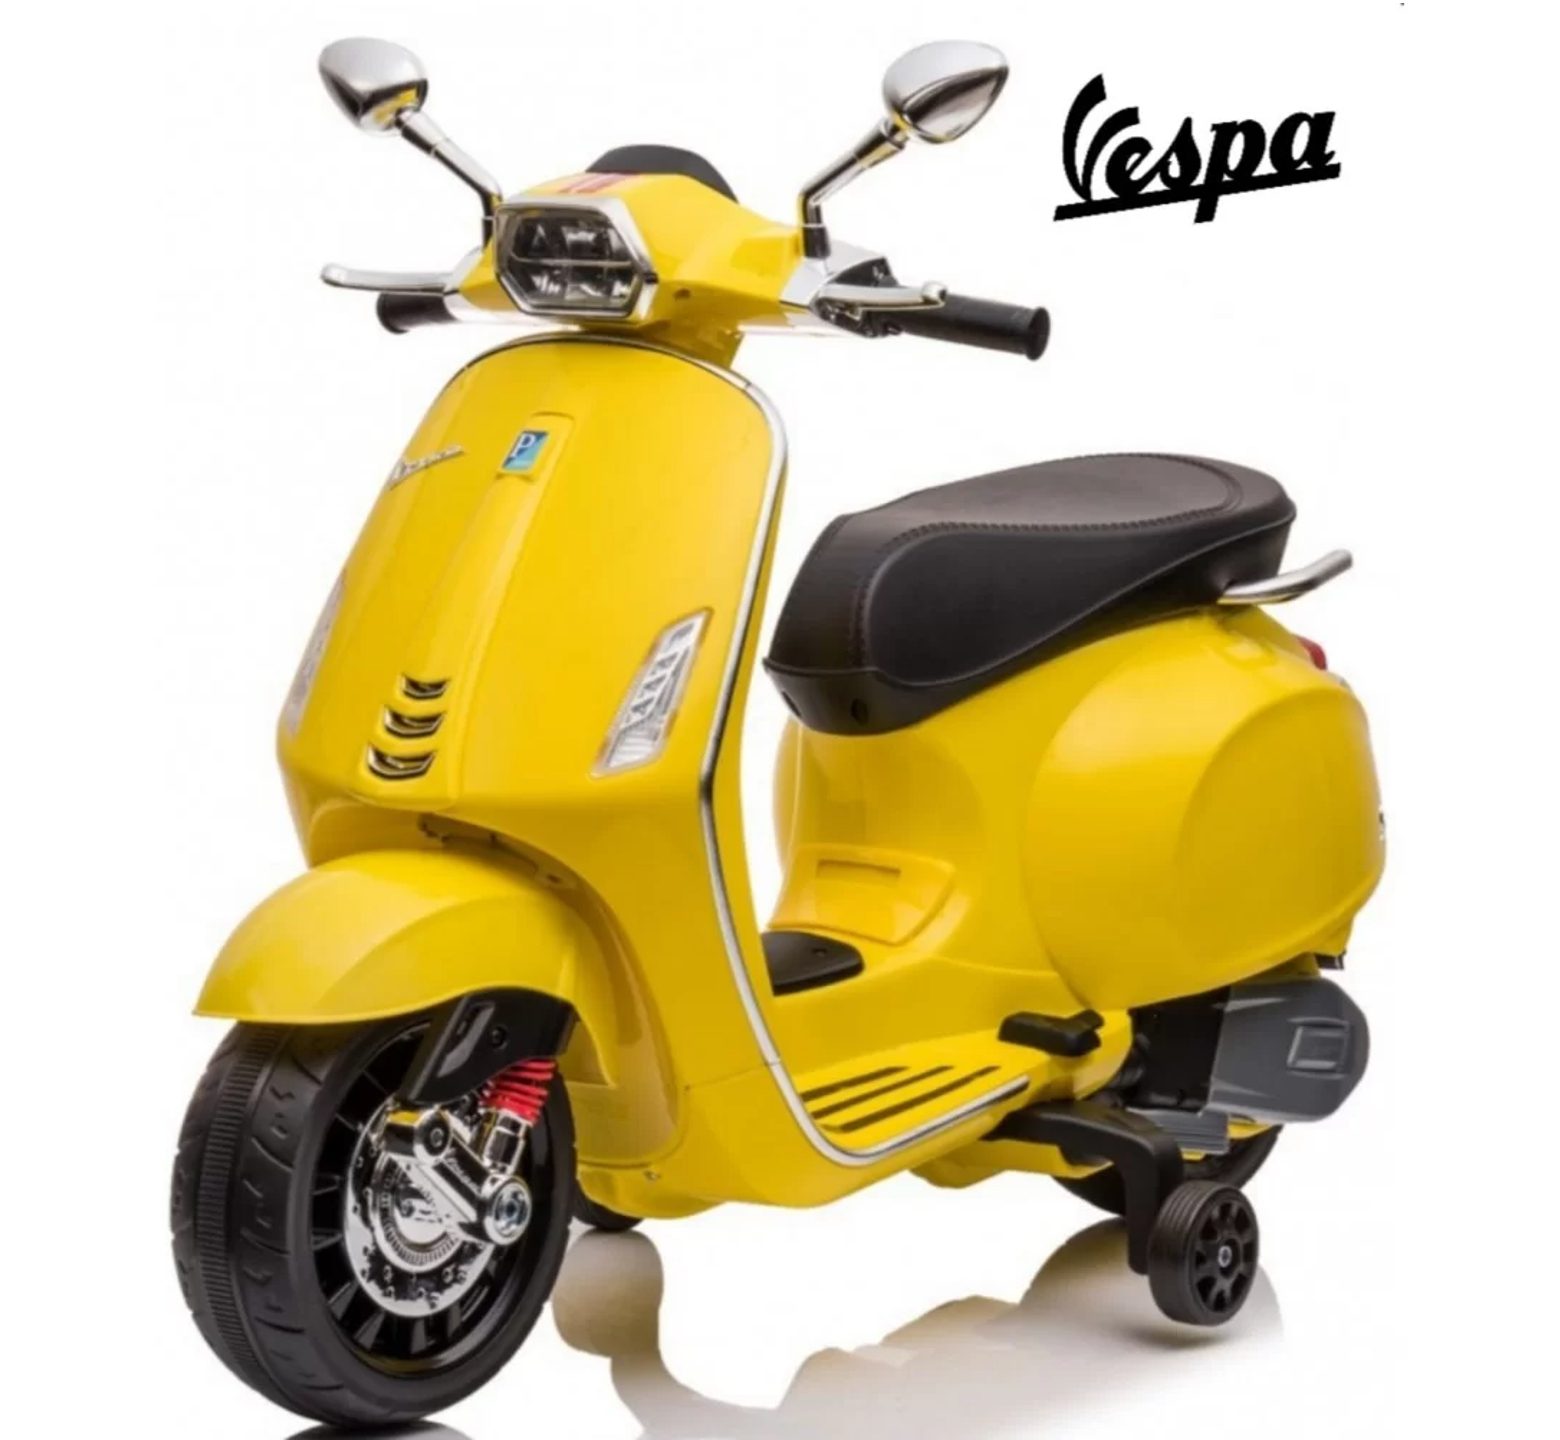 Ηλεκτροκίνητη Παιδική Μηχανή Licensed Vespa Piaggio 12V σε Κίτρινο Χρώμα